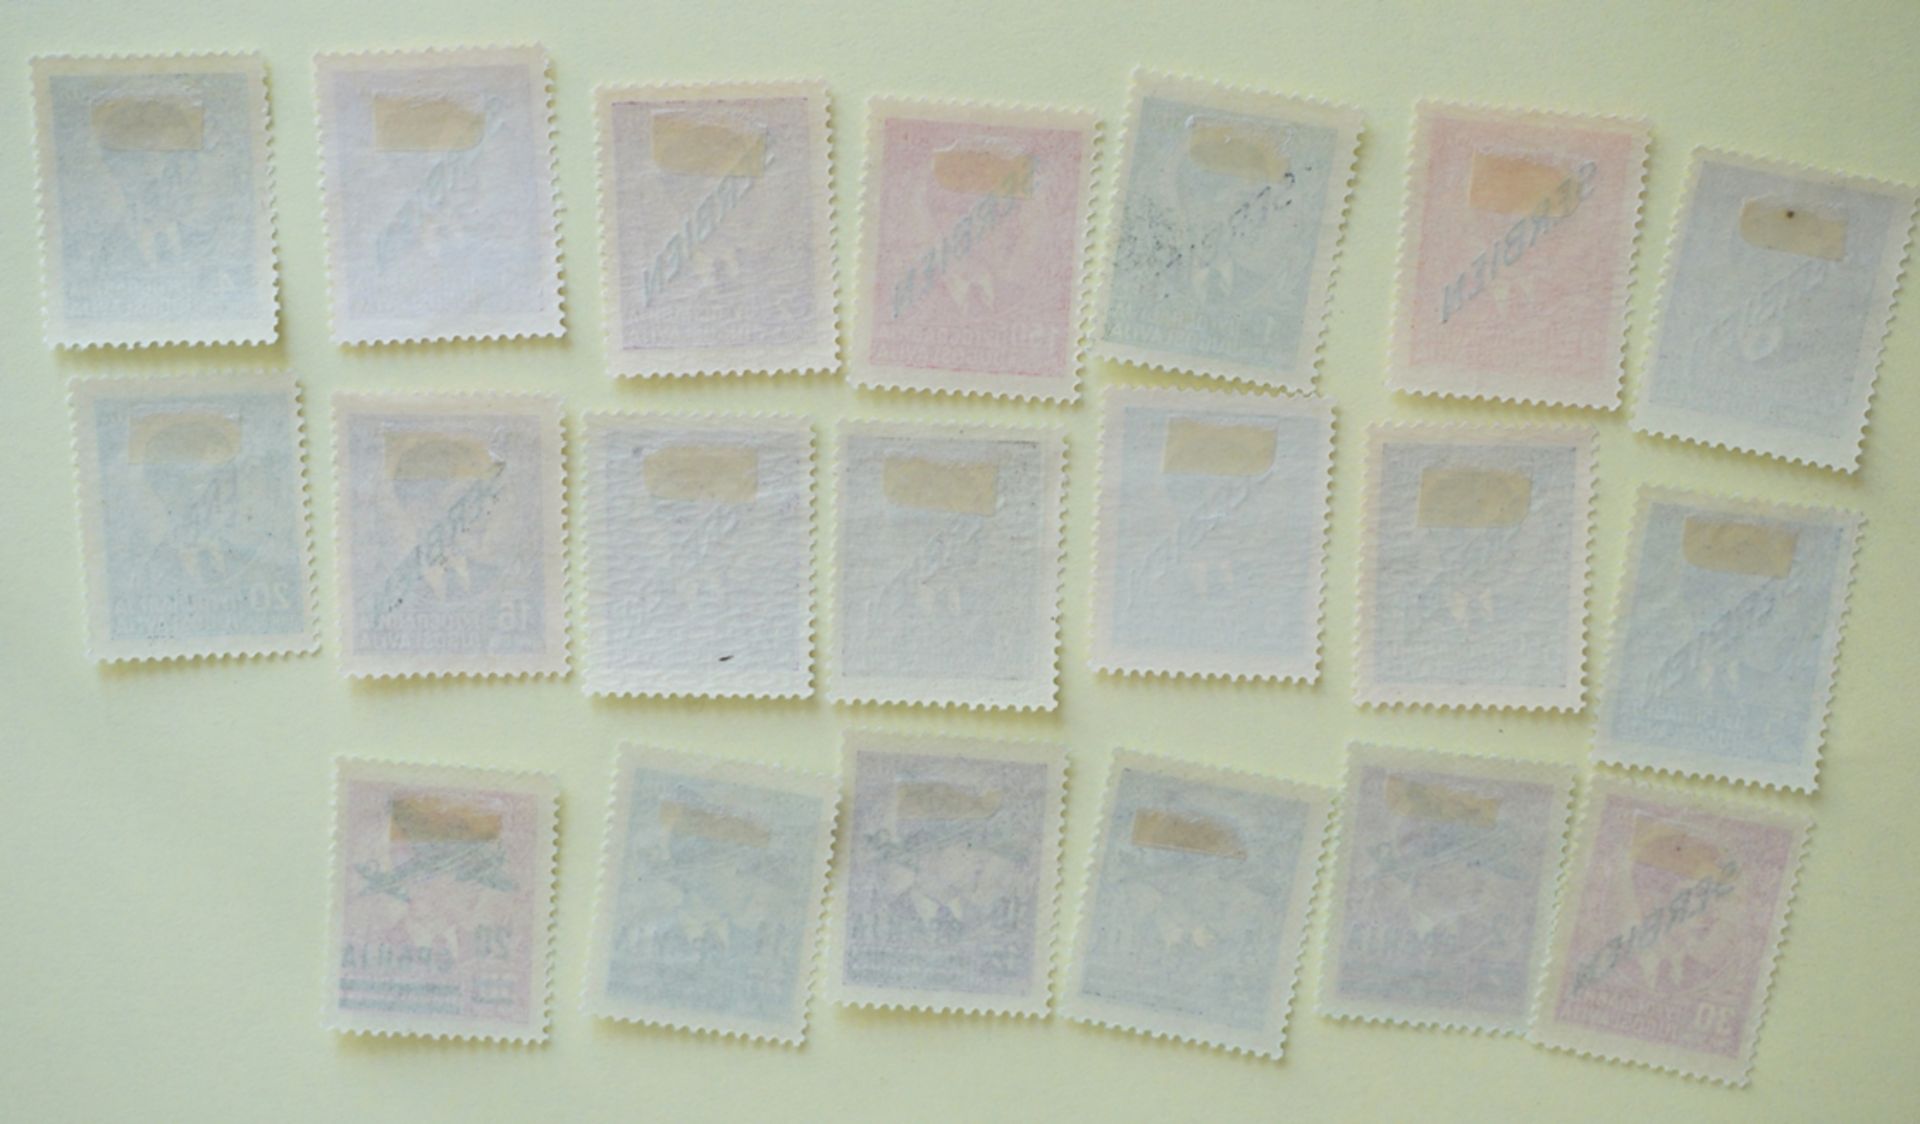 Serbien, Neuauflage der Freimarken von Jugoslawien, 02.06.1941, Flugpostmarken, 05.07.1942 - Bild 2 aus 2